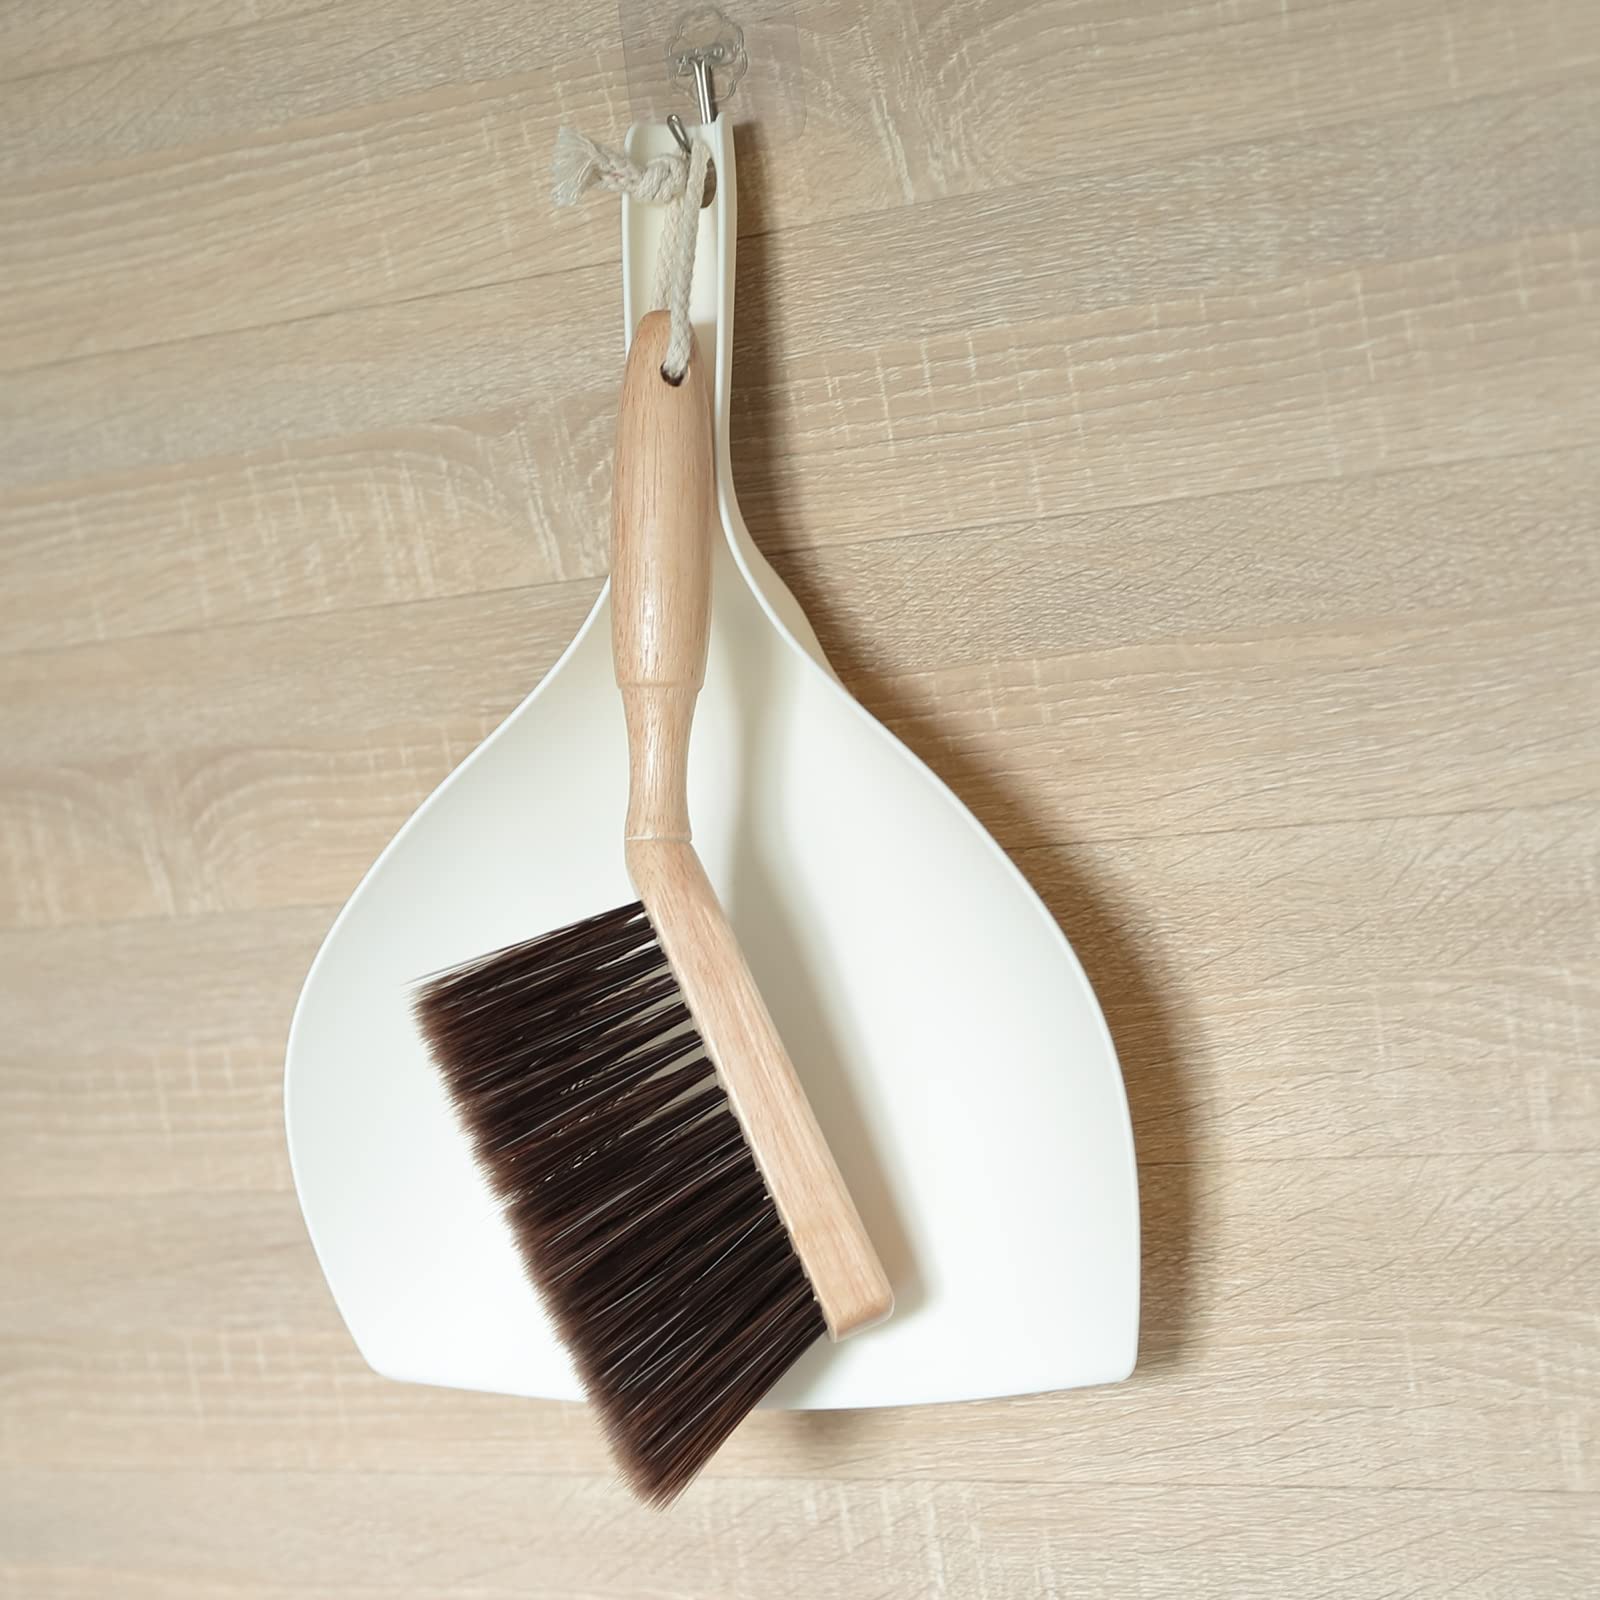 Dust Pan with Brush | Sleek Wooden Handle Dust Pan Table & Floor Cleaner Brush